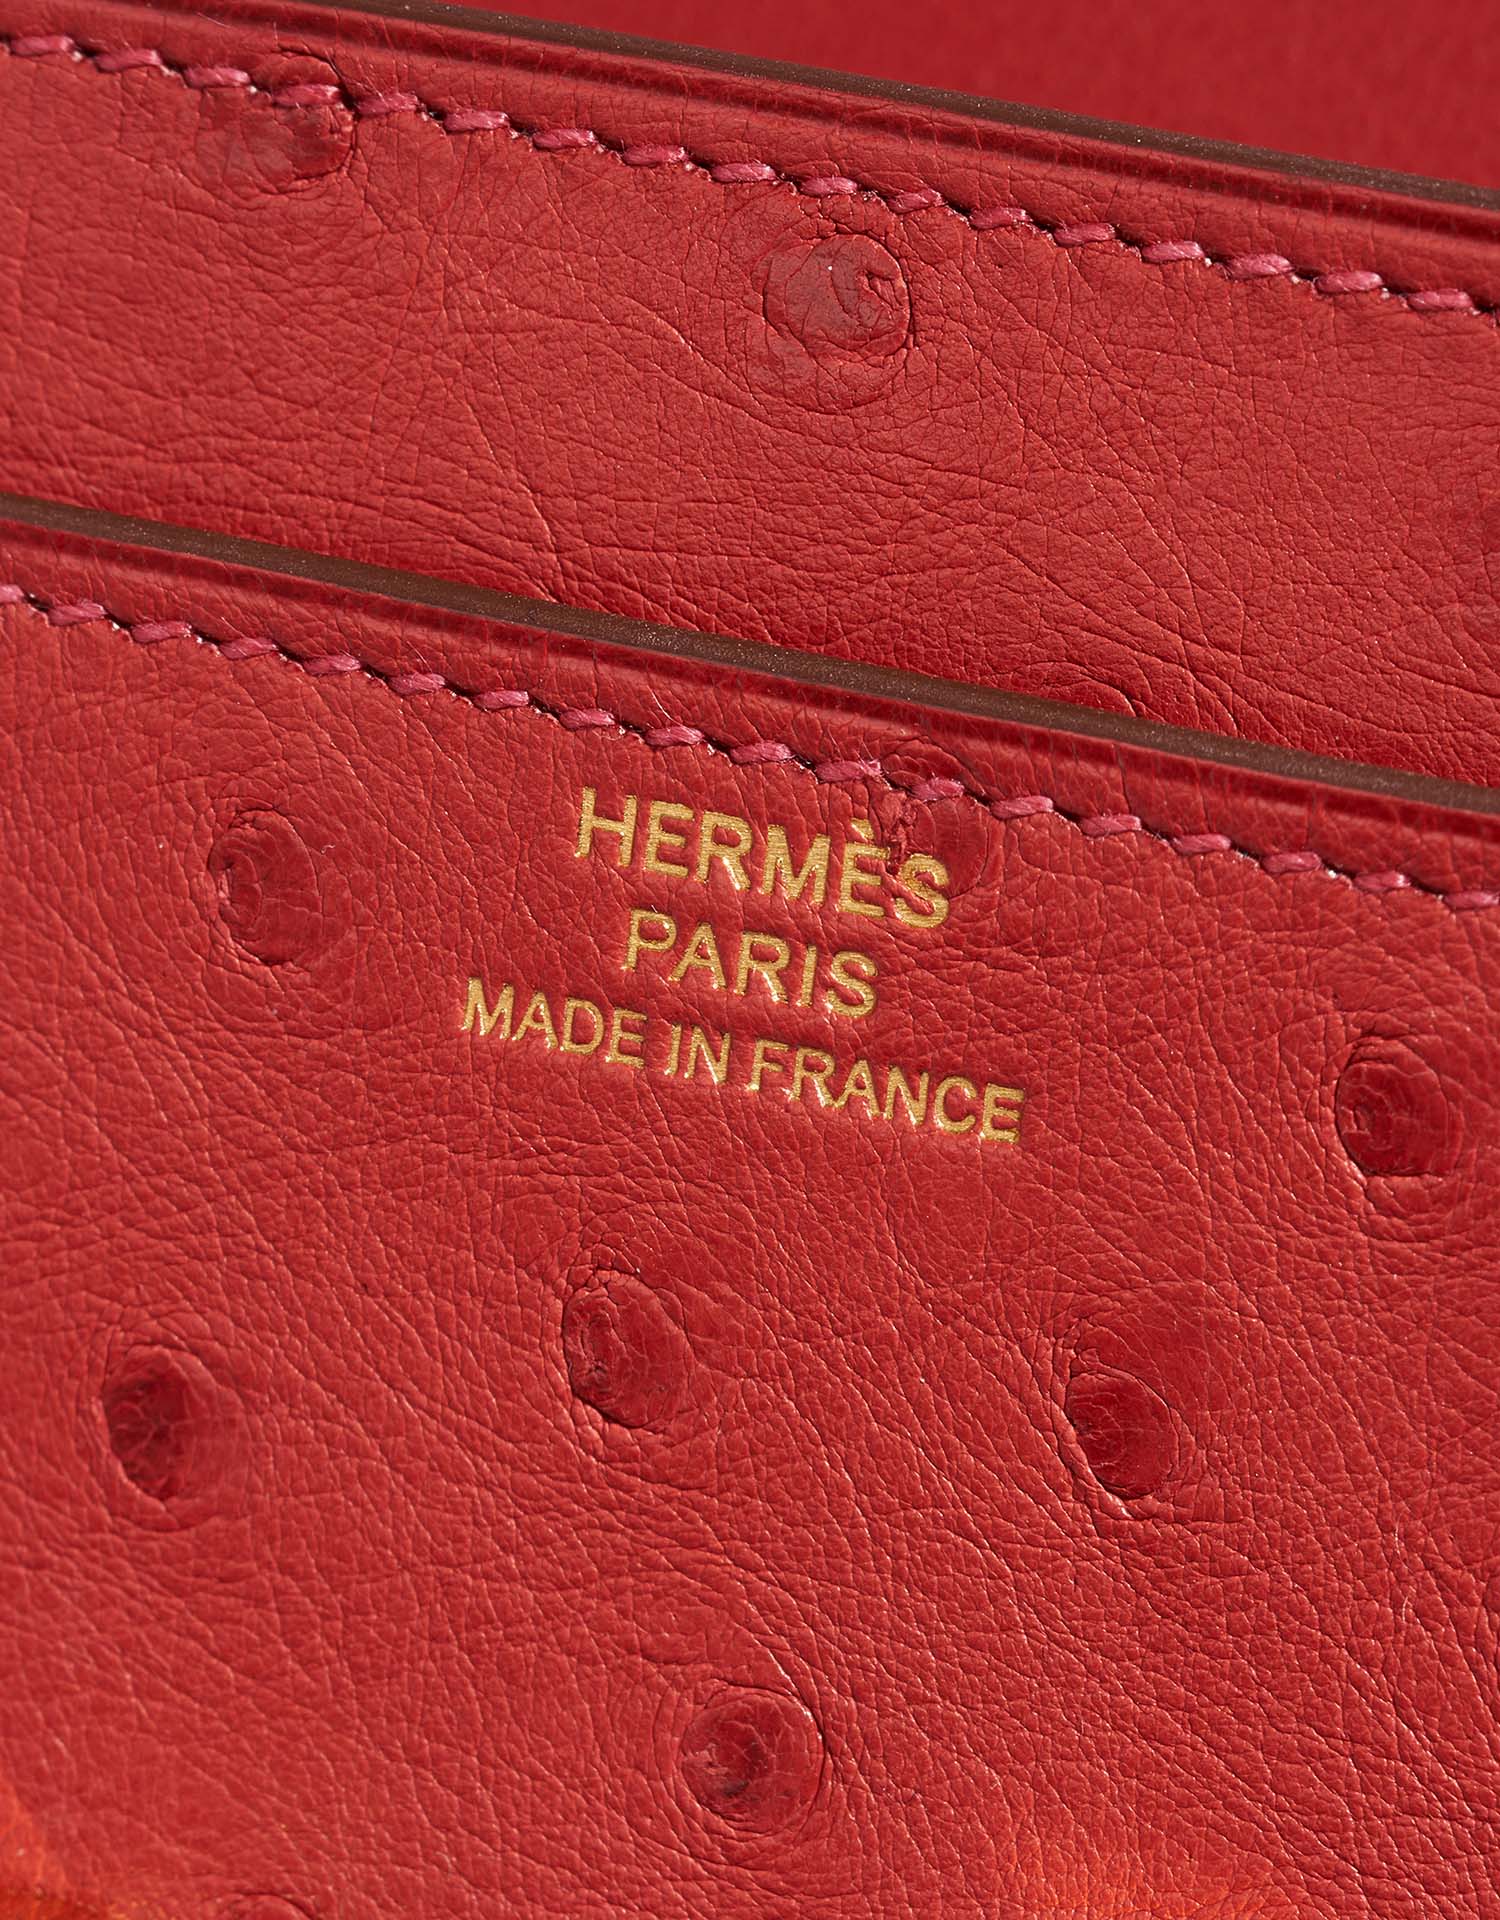 Sac Hermès d'occasion Constance Long Wallet Ostrich Rouge Vif Red | Vendez votre sac de créateur sur Saclab.com